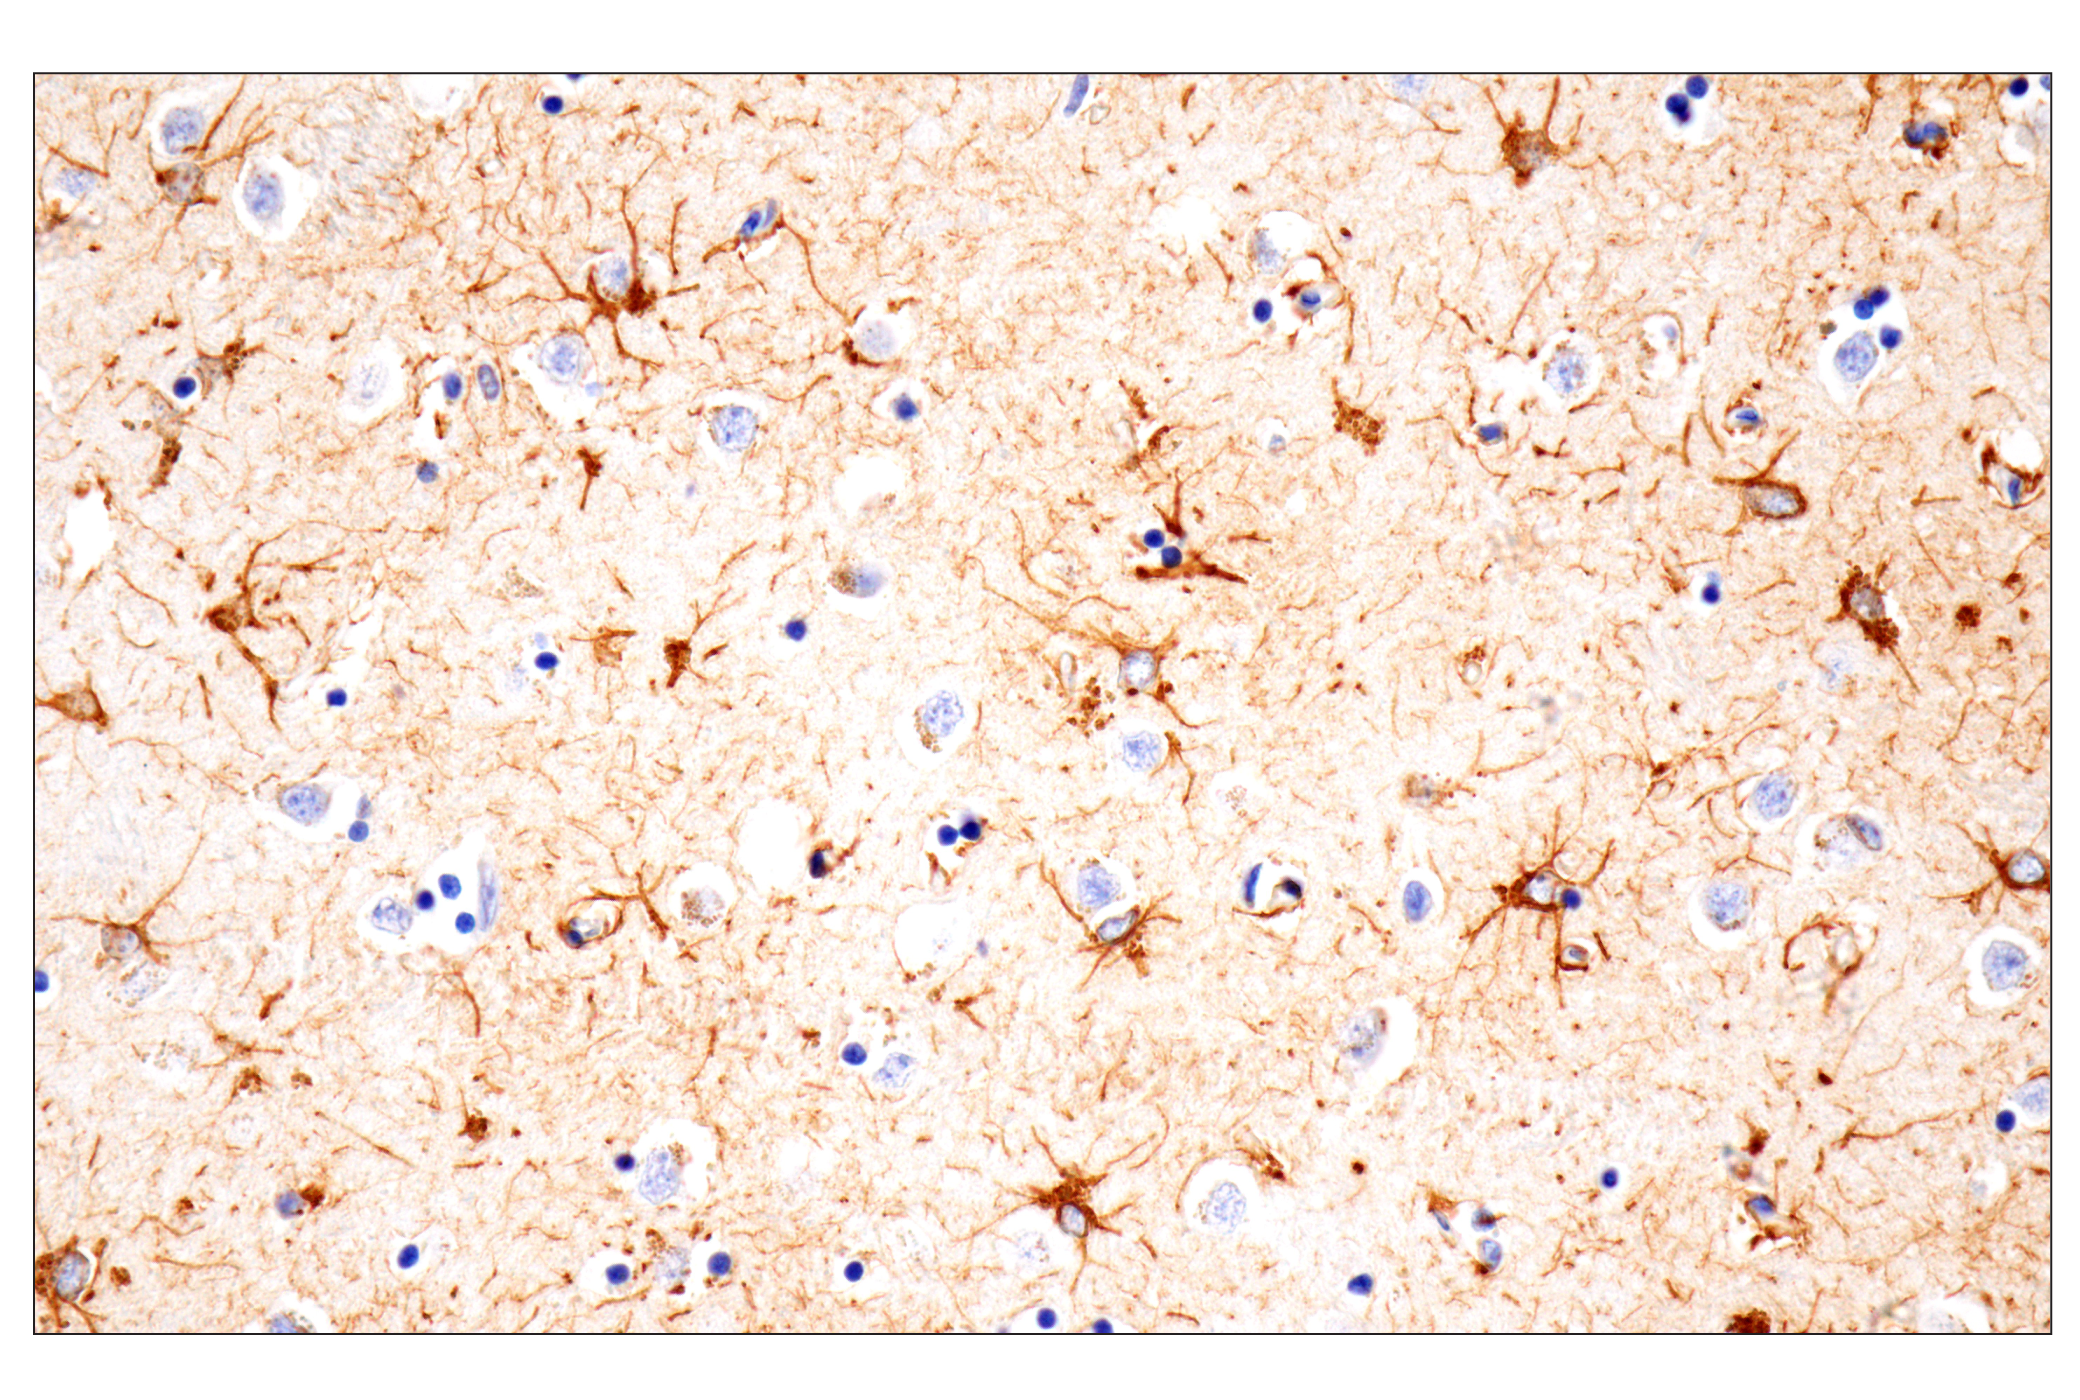  Image 16: Traumatic Brain Injury Biomarker Antibody Sampler Kit